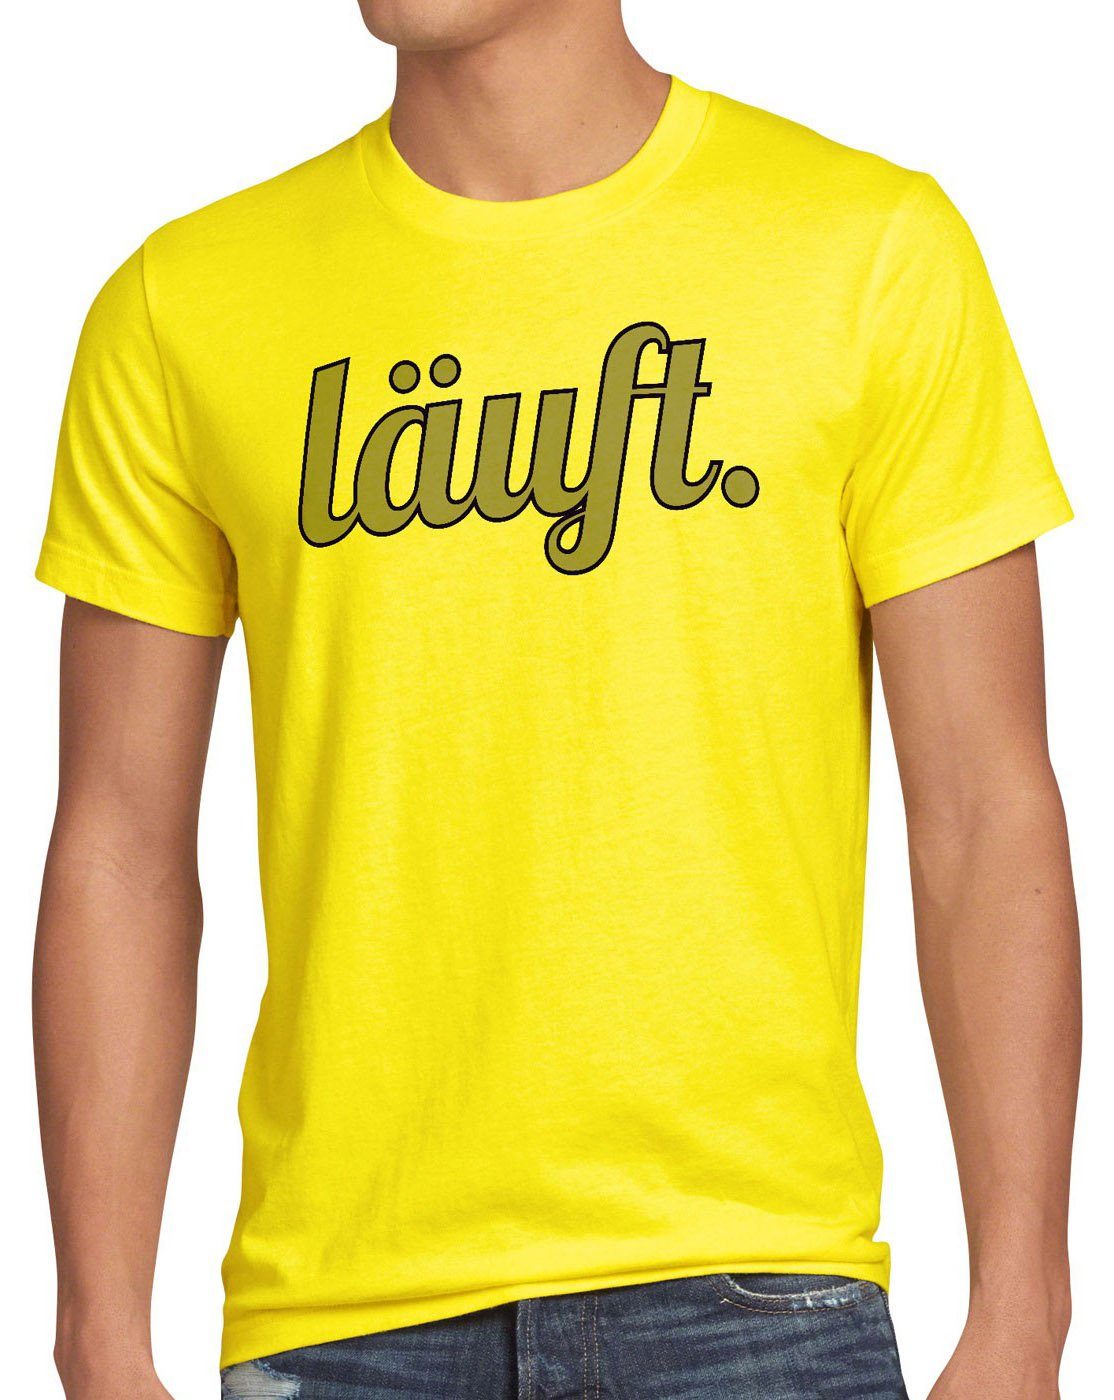 style3 Print-Shirt Herren T-Shirt läuft Funshirt Spruchshirt Shirt Fun bei dir meme kult mir top gelb